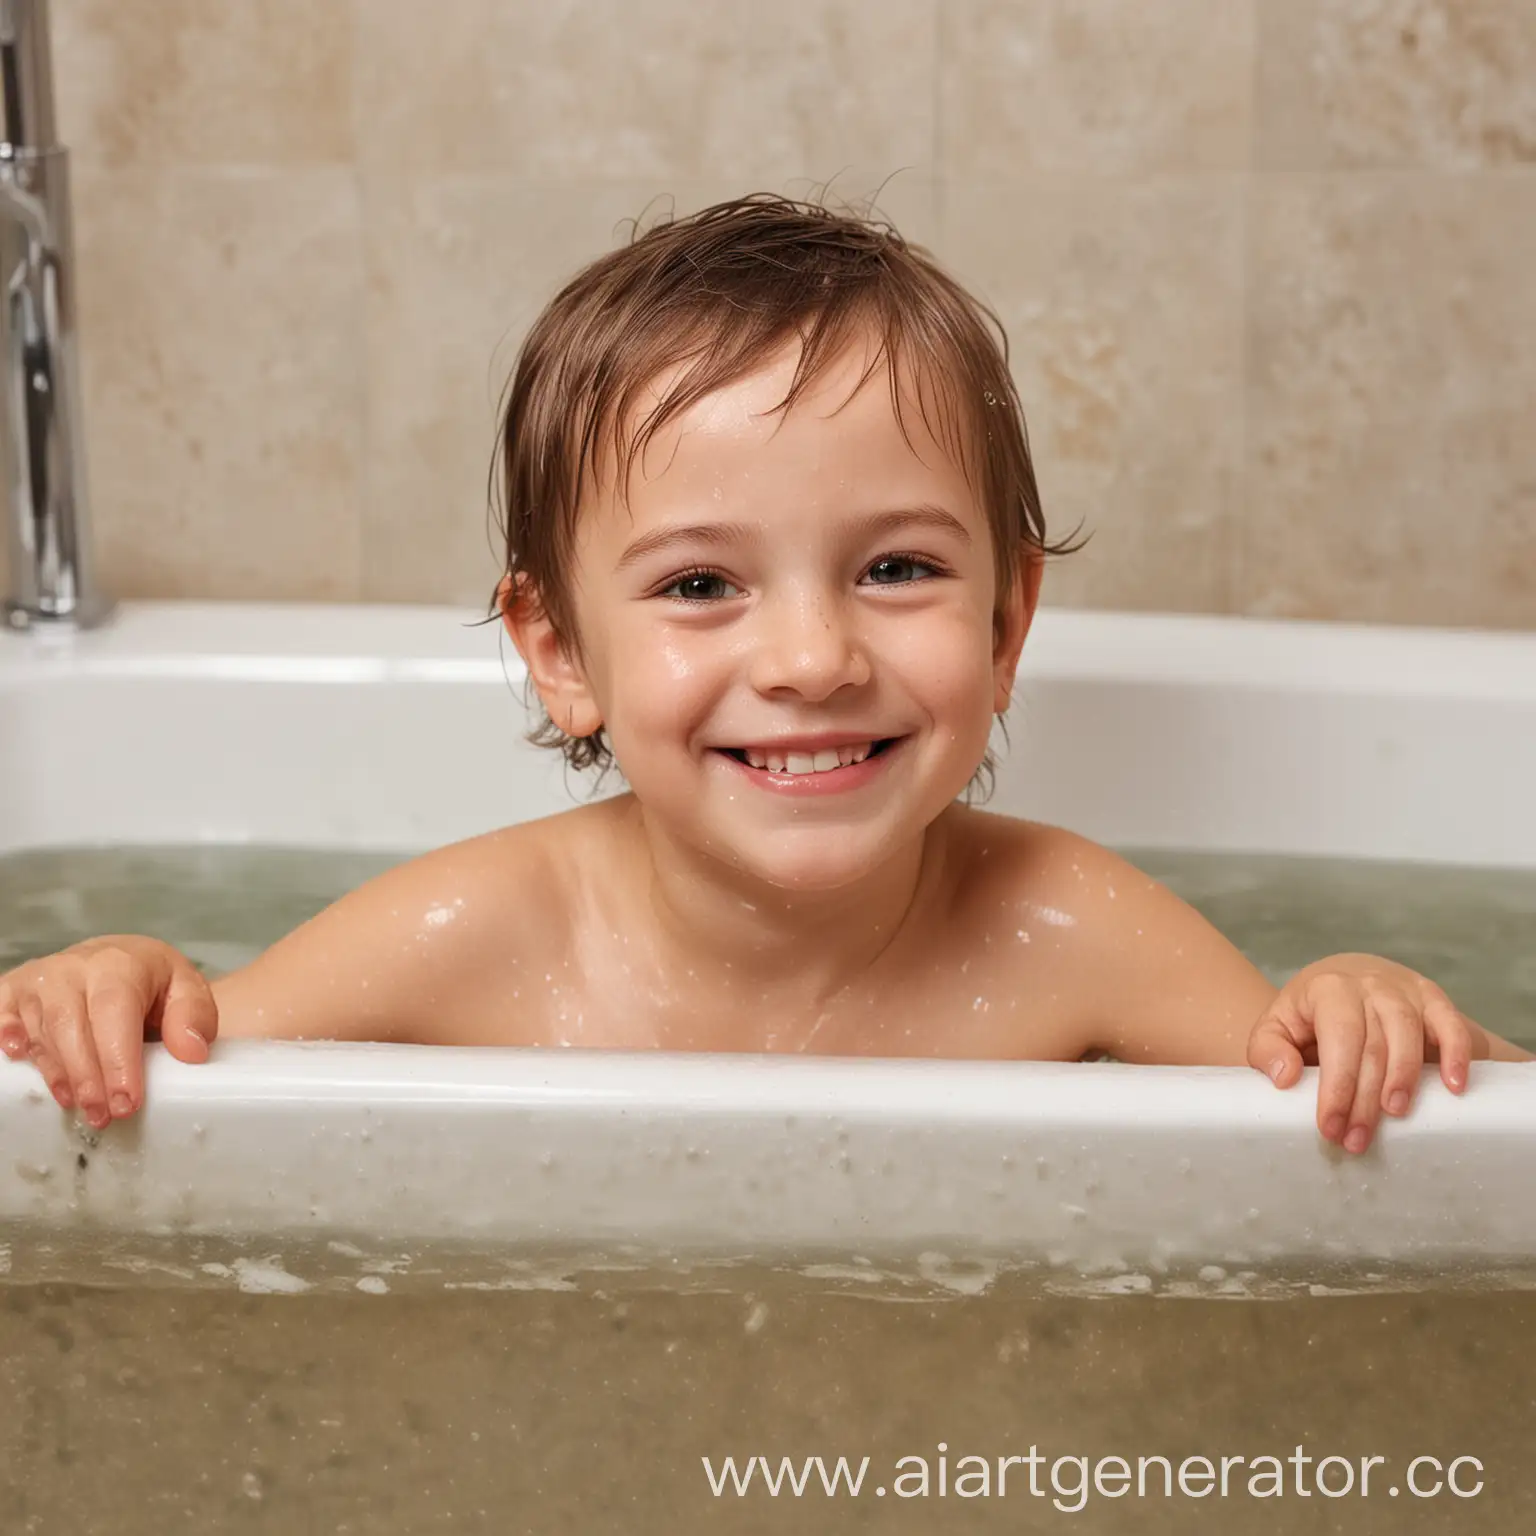 Joyful-Child-Bathing-in-a-Sudsy-Tub